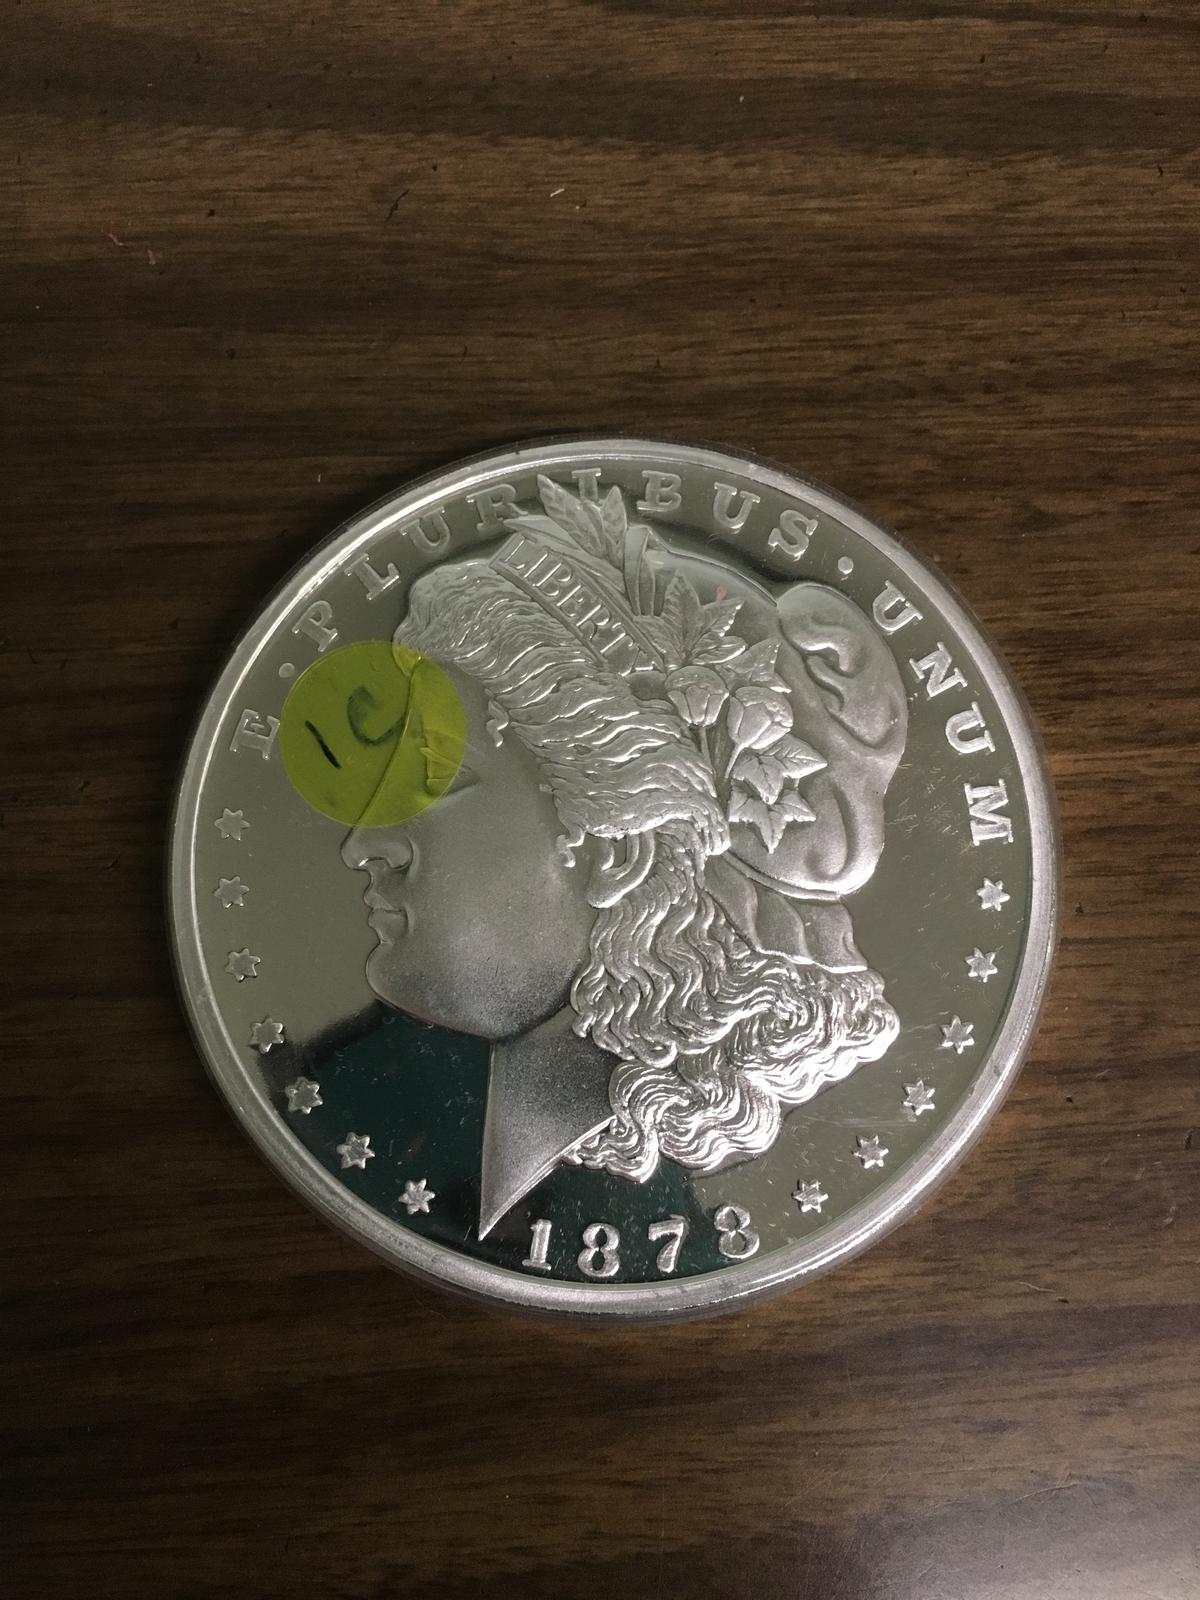 1 Pound Silver Coin - BU - 16 FULL ounces of Silver!